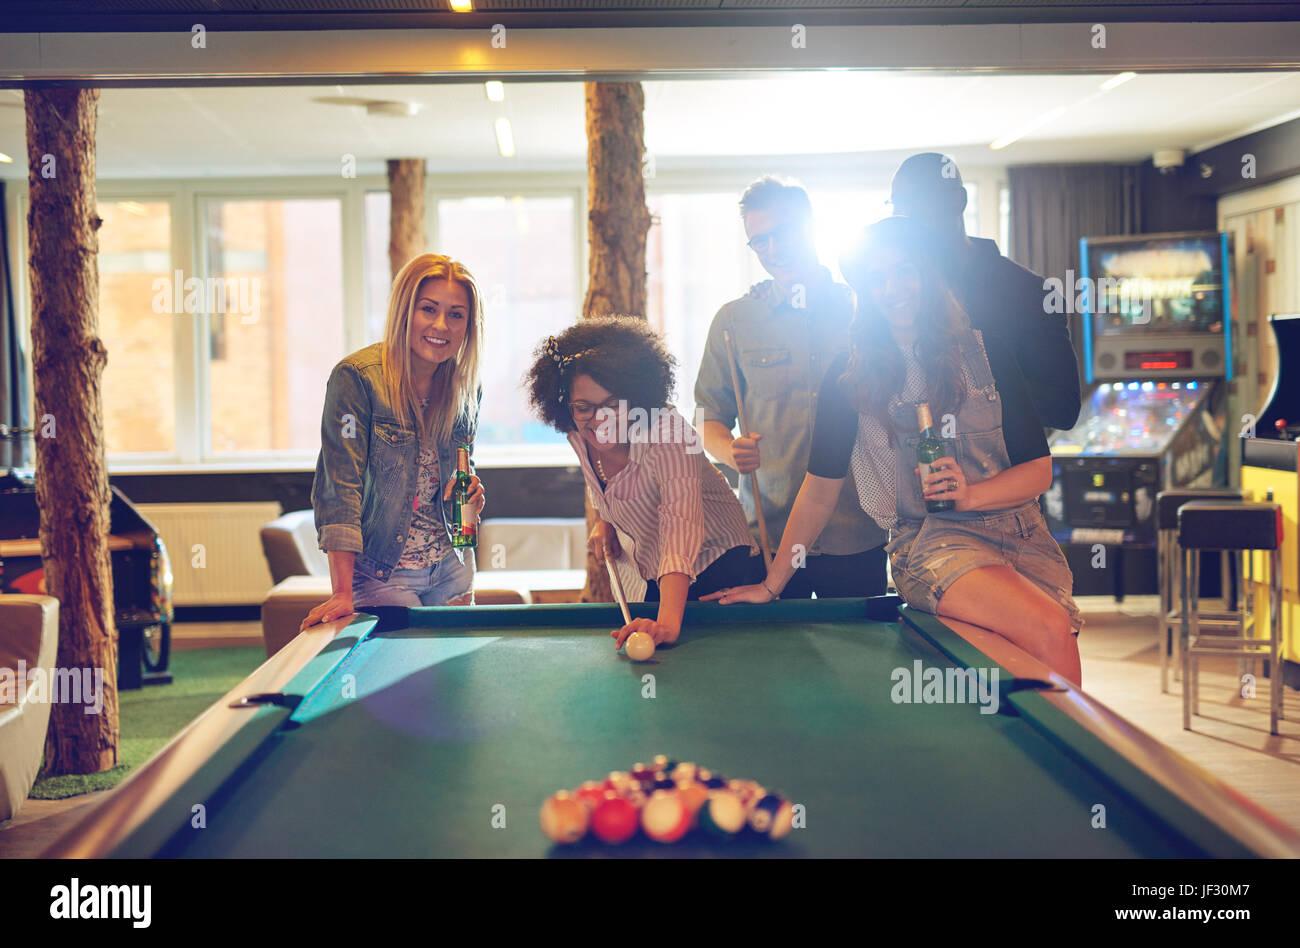 Gruppe von fünf männliche und weibliche Freunde im Spielzimmer Billard zusammen spielen, während Sie lachen und trinken Bier Stockfoto